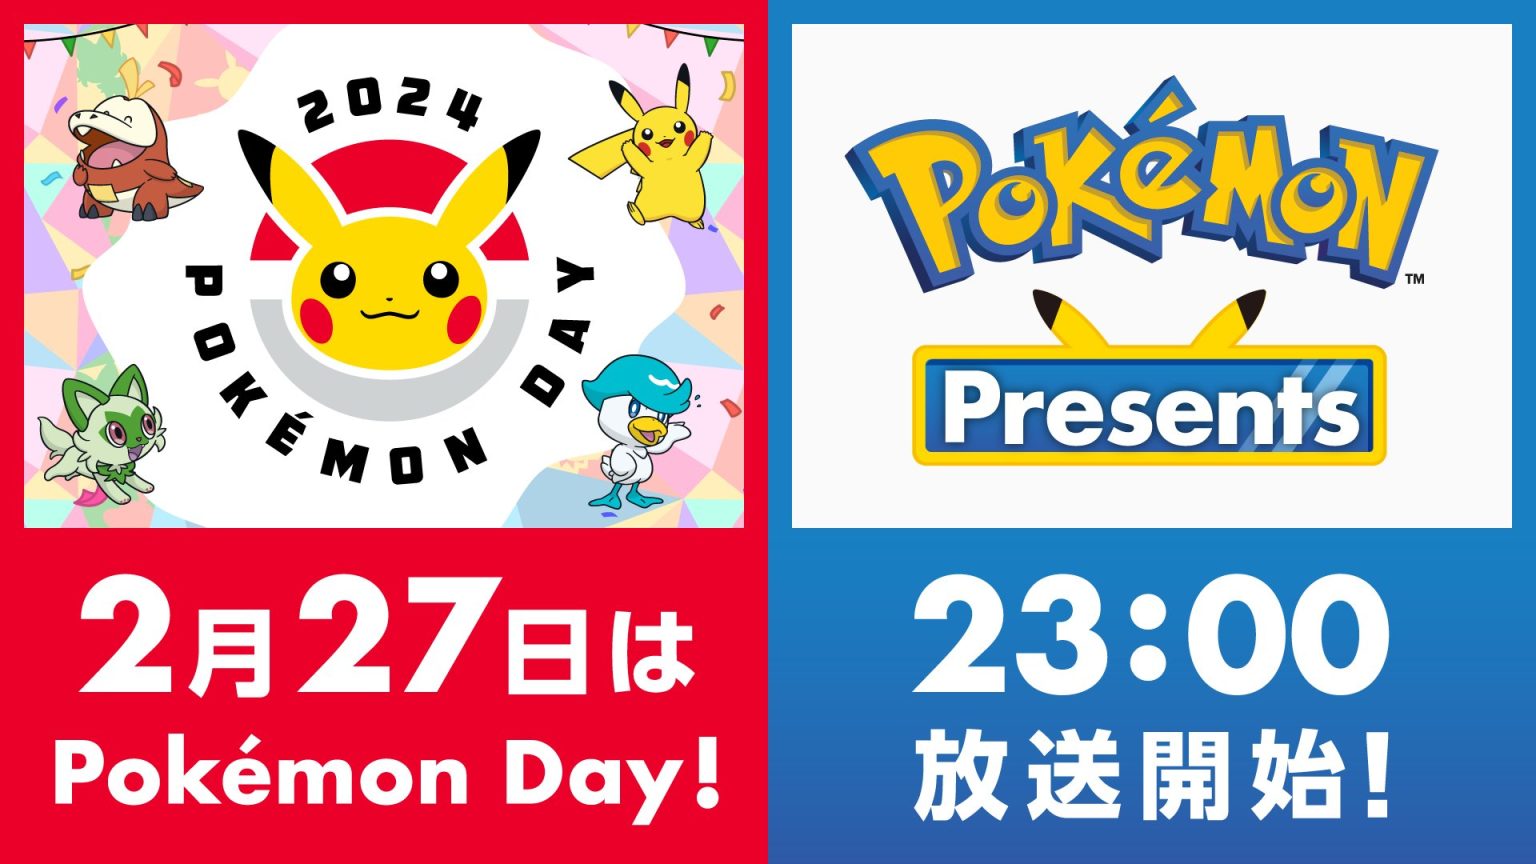 Pokemon Presents Coming on Pokemon Day Next Tuesday! PokeBeach